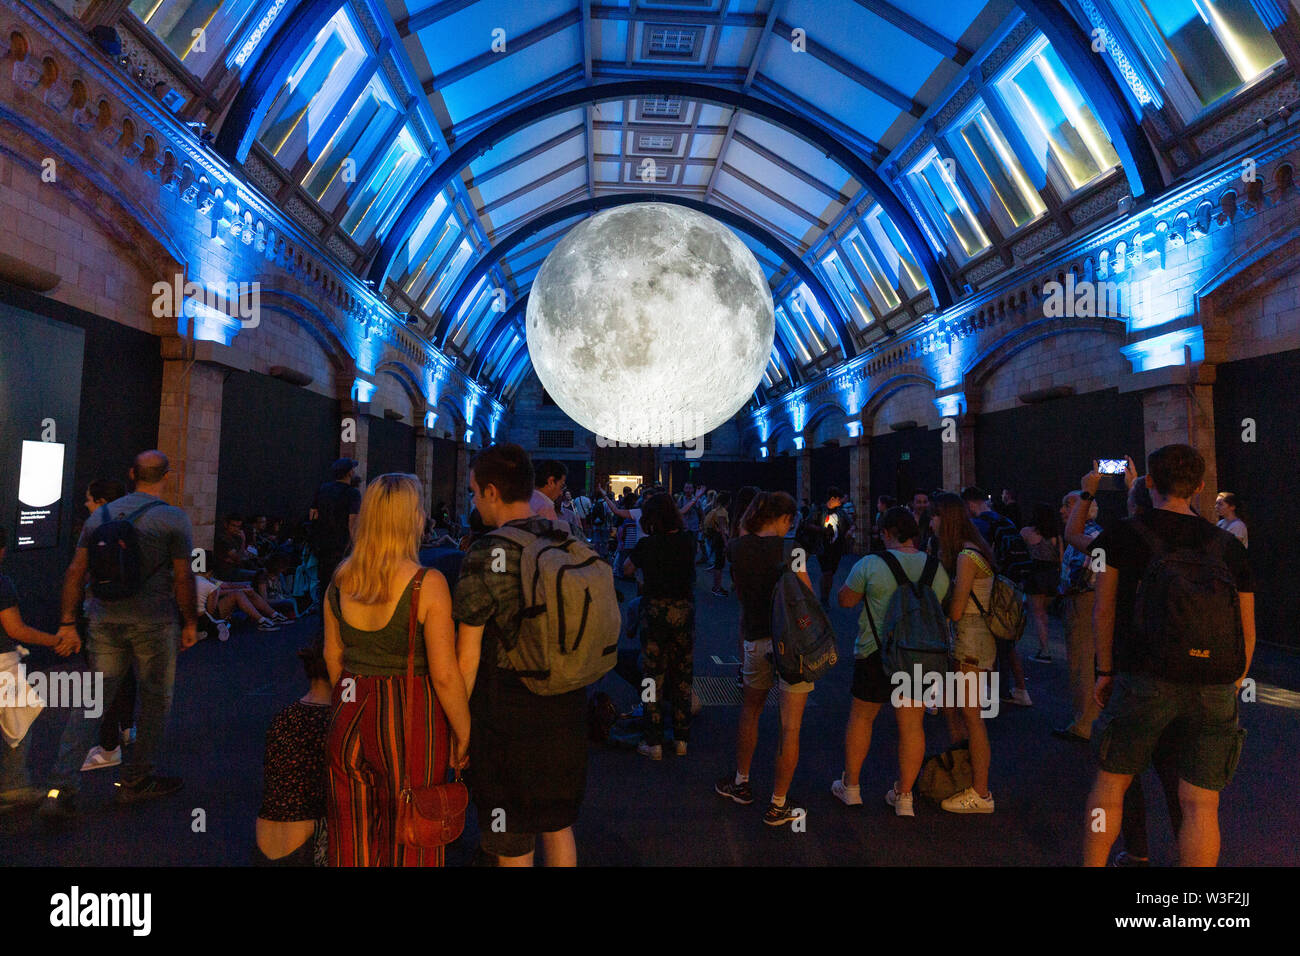 Museo de la Luna - Exposición de un modelo de la luna por el artista Luke Jerram; El Museo de Historia Natural, Londres, Reino Unido Foto de stock